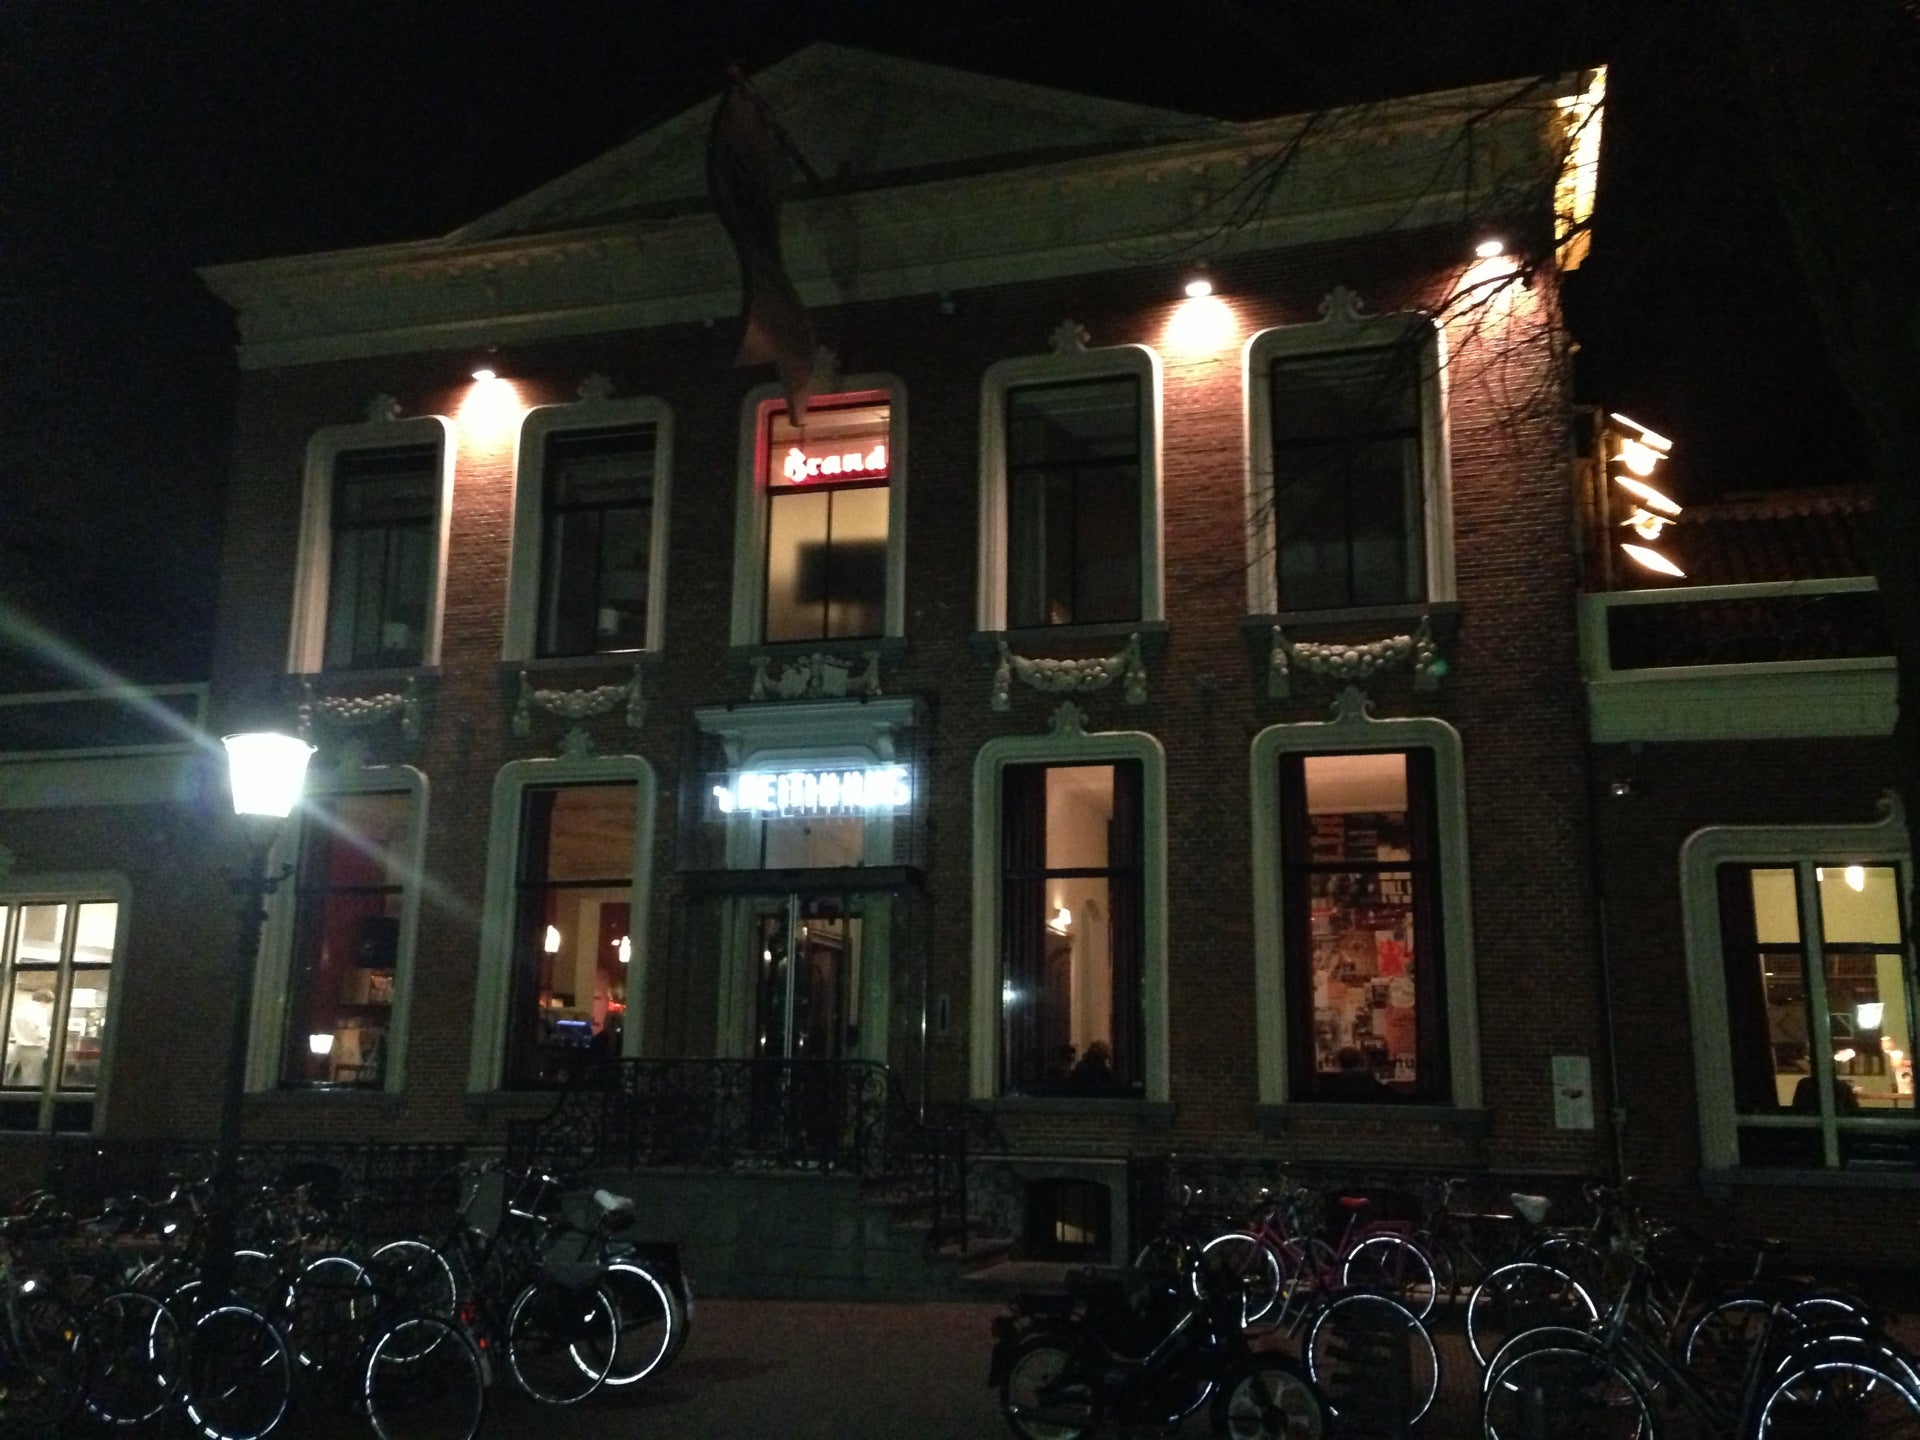 Stadscafé-Restaurant 't Feithhuis